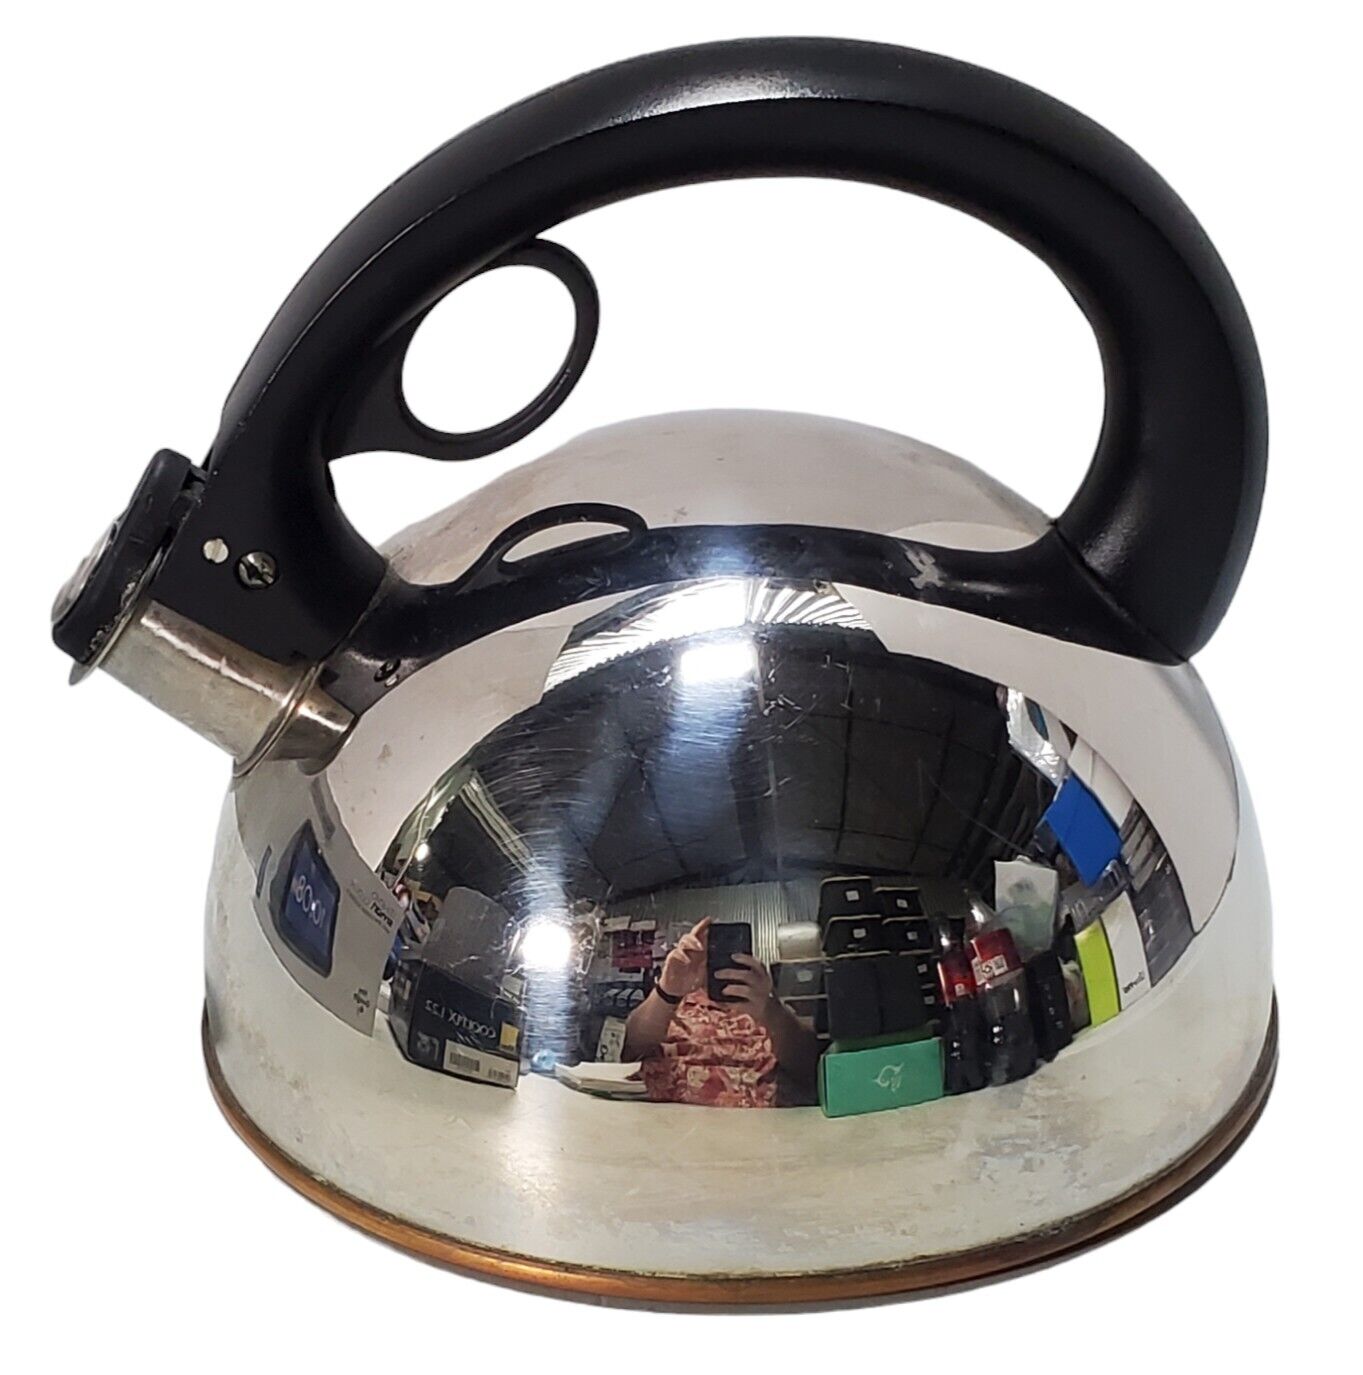 REVERE WARE Stainless Steel Copper Bottom Whistling Tea Kettle Teapot